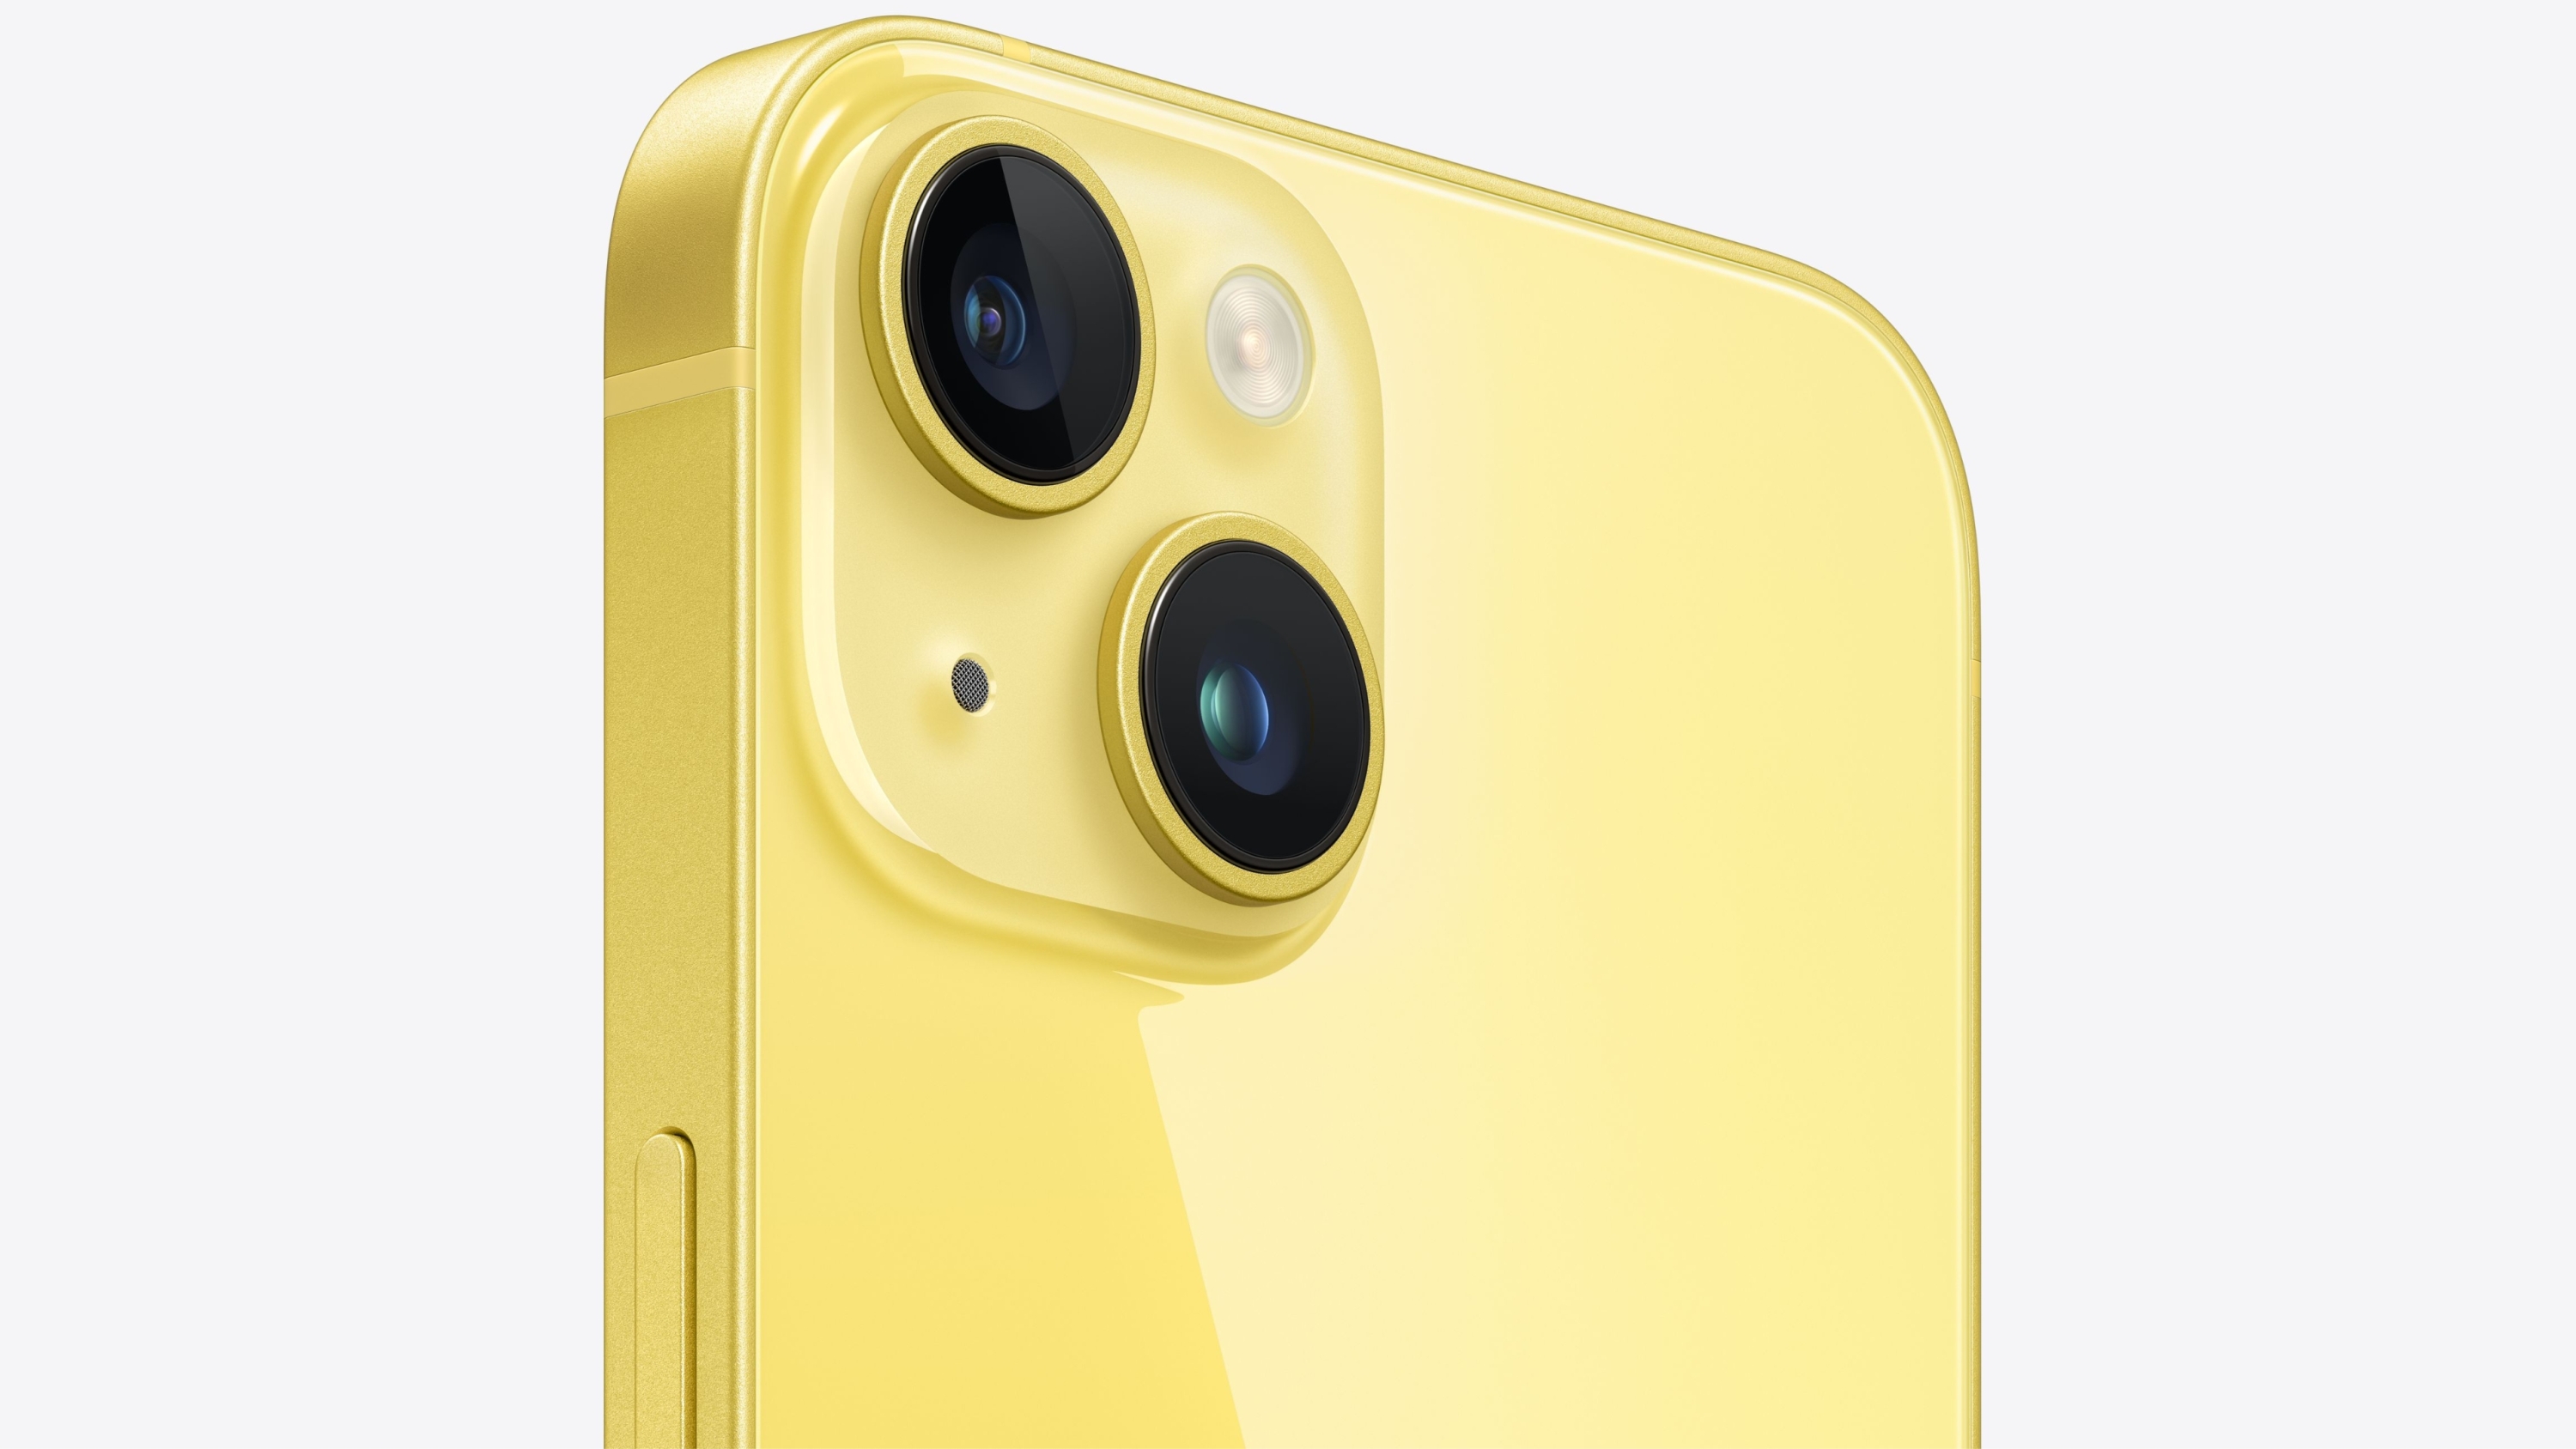 
                                    
                                iPhone 14 si tinge di giallo: disponibile in Italia la nuova colorazione ispirata alla primavera